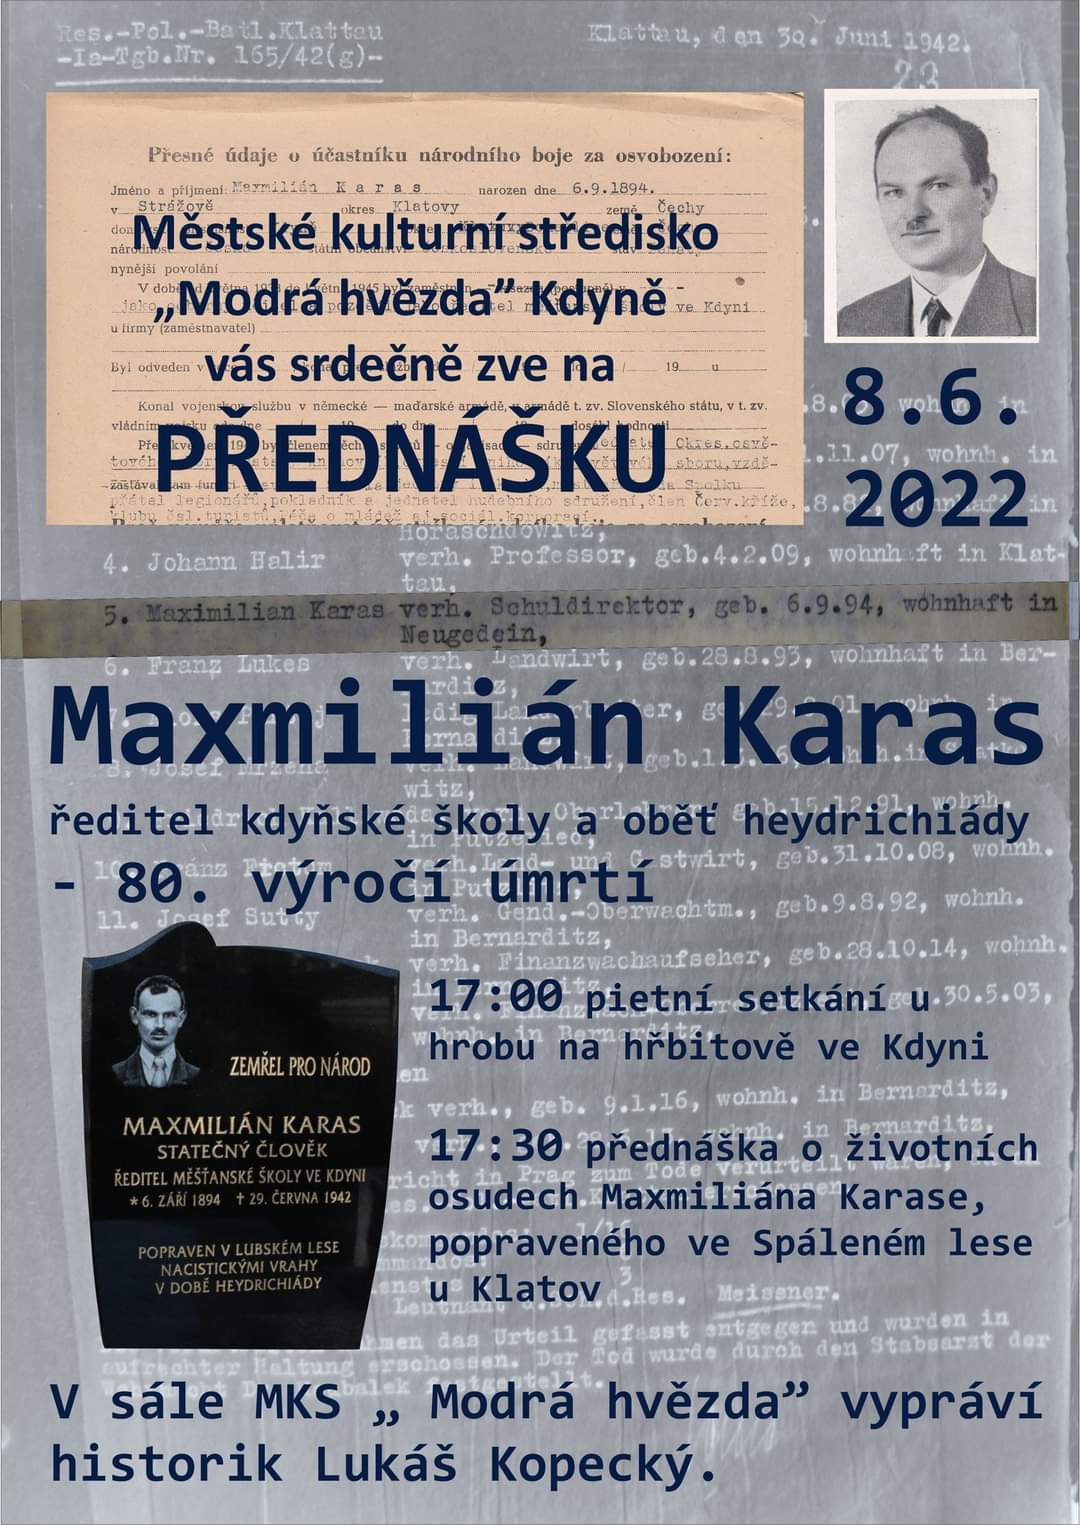 2022 06 08 Maxmilián Karas ředitel kdyňské školy a oběť heydrichiády